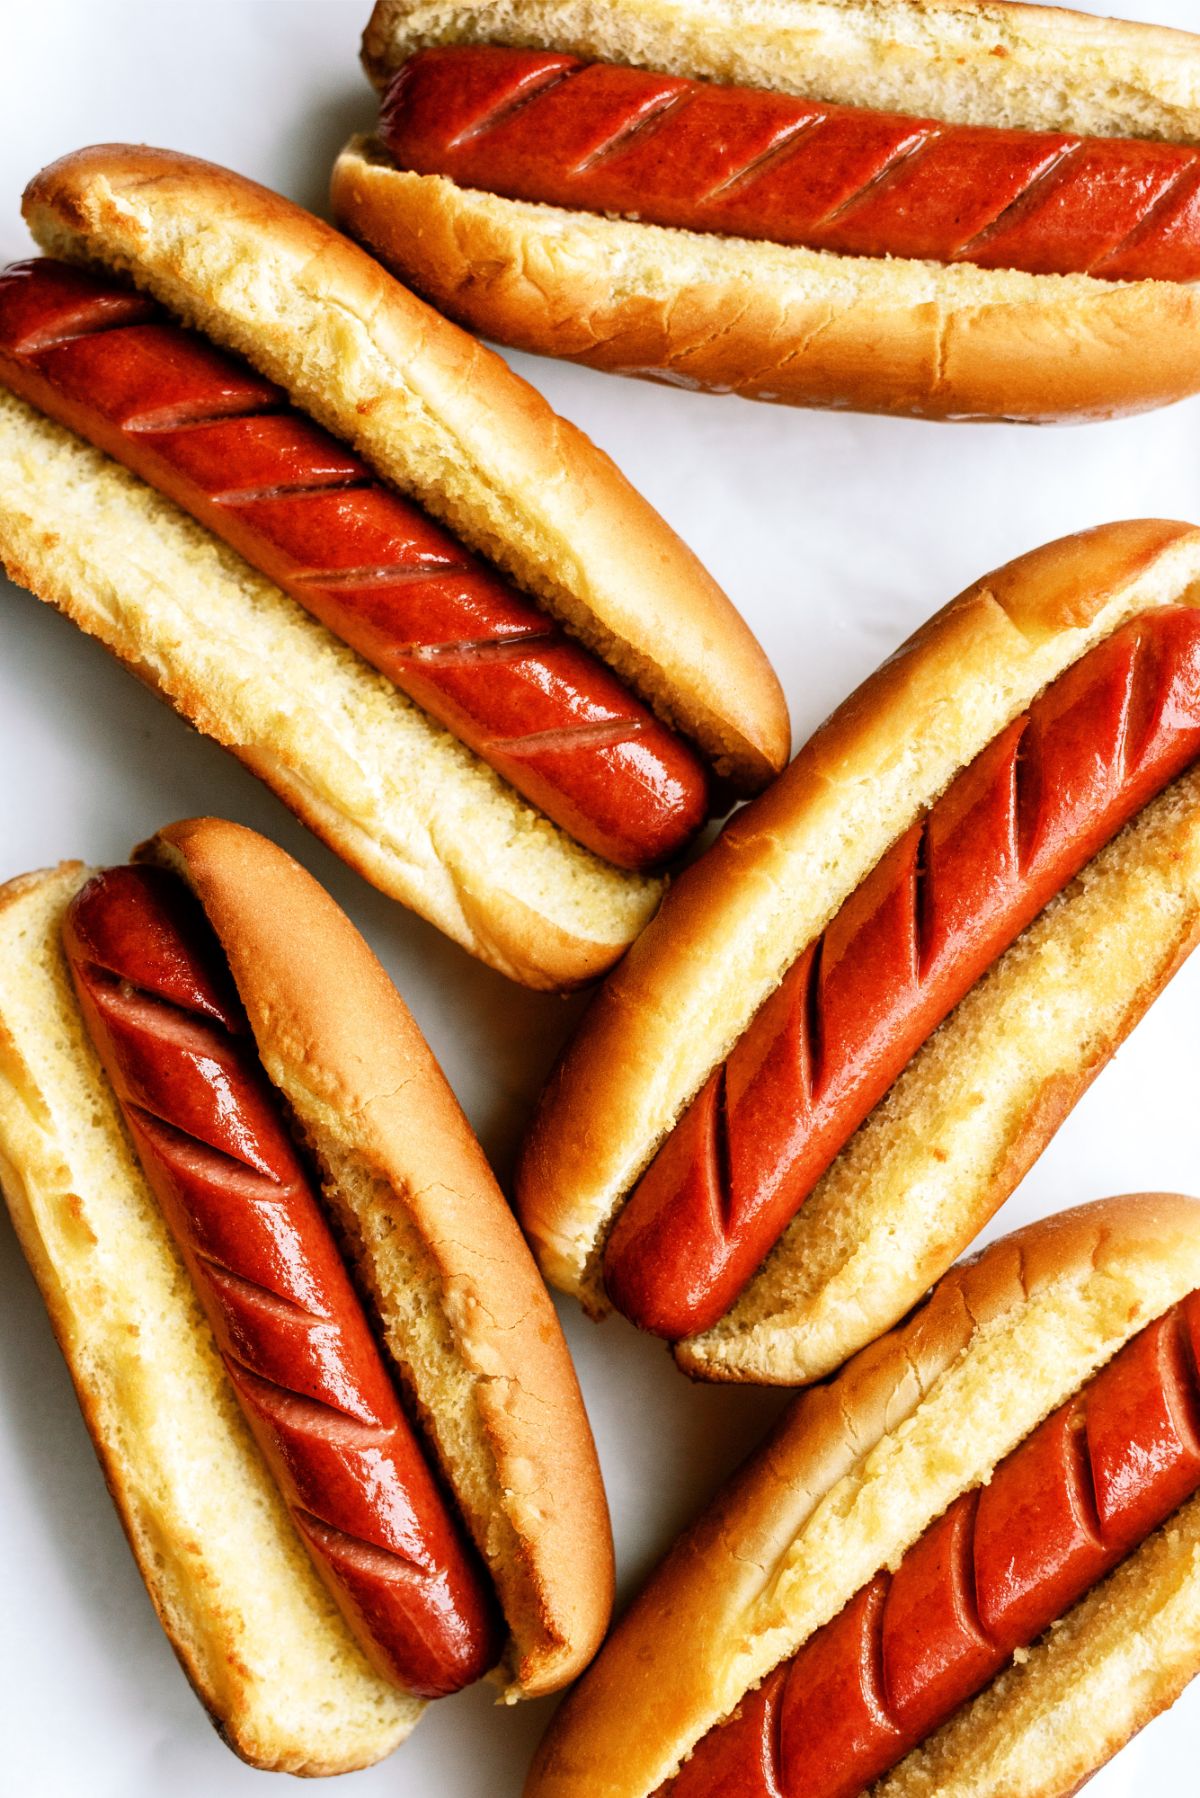 Air Fryer Hot Dogs inside buns